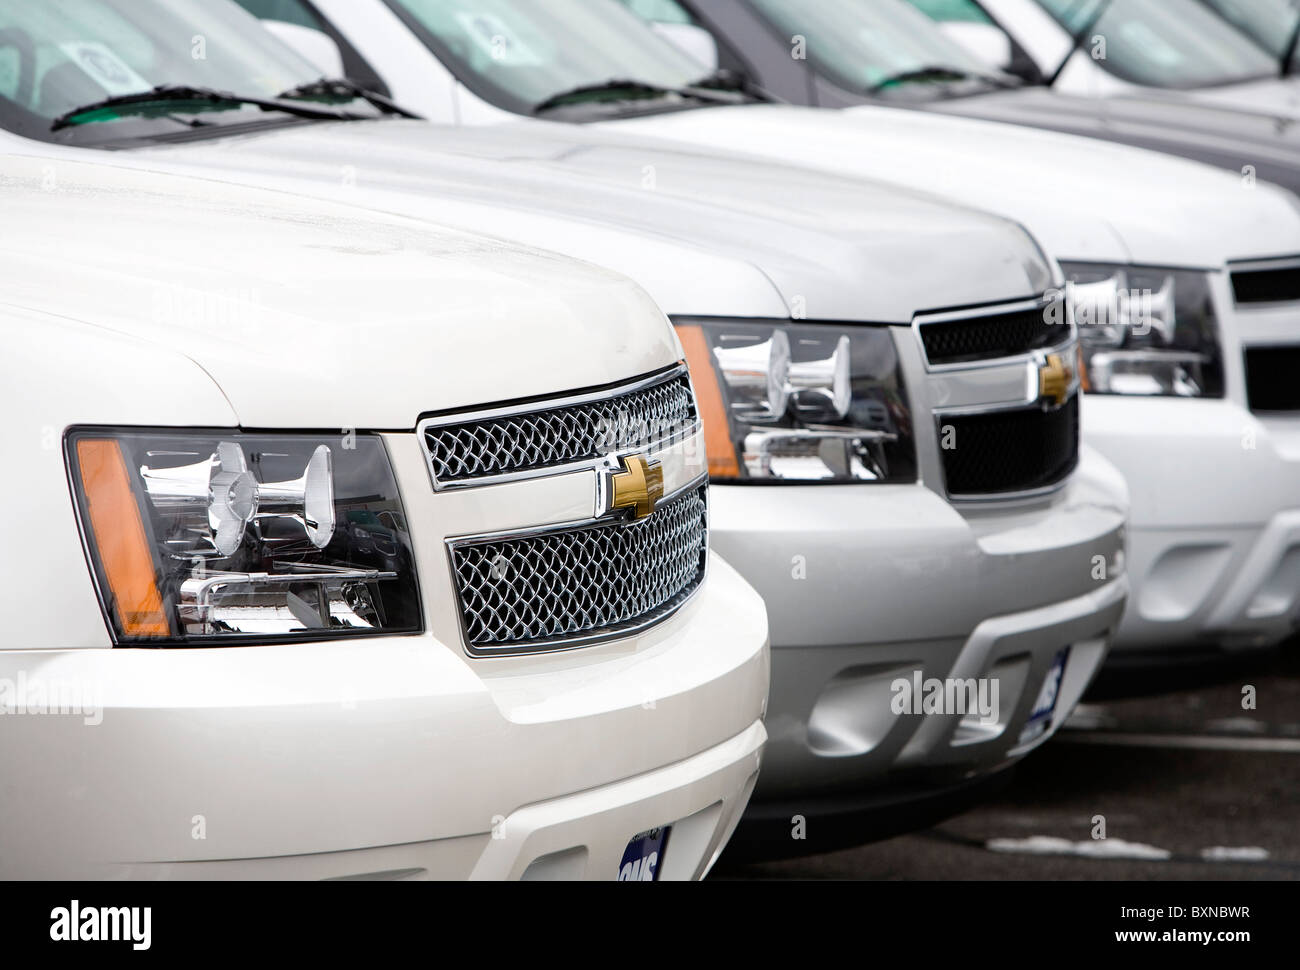 A General Motors dealer lot.  Stock Photo